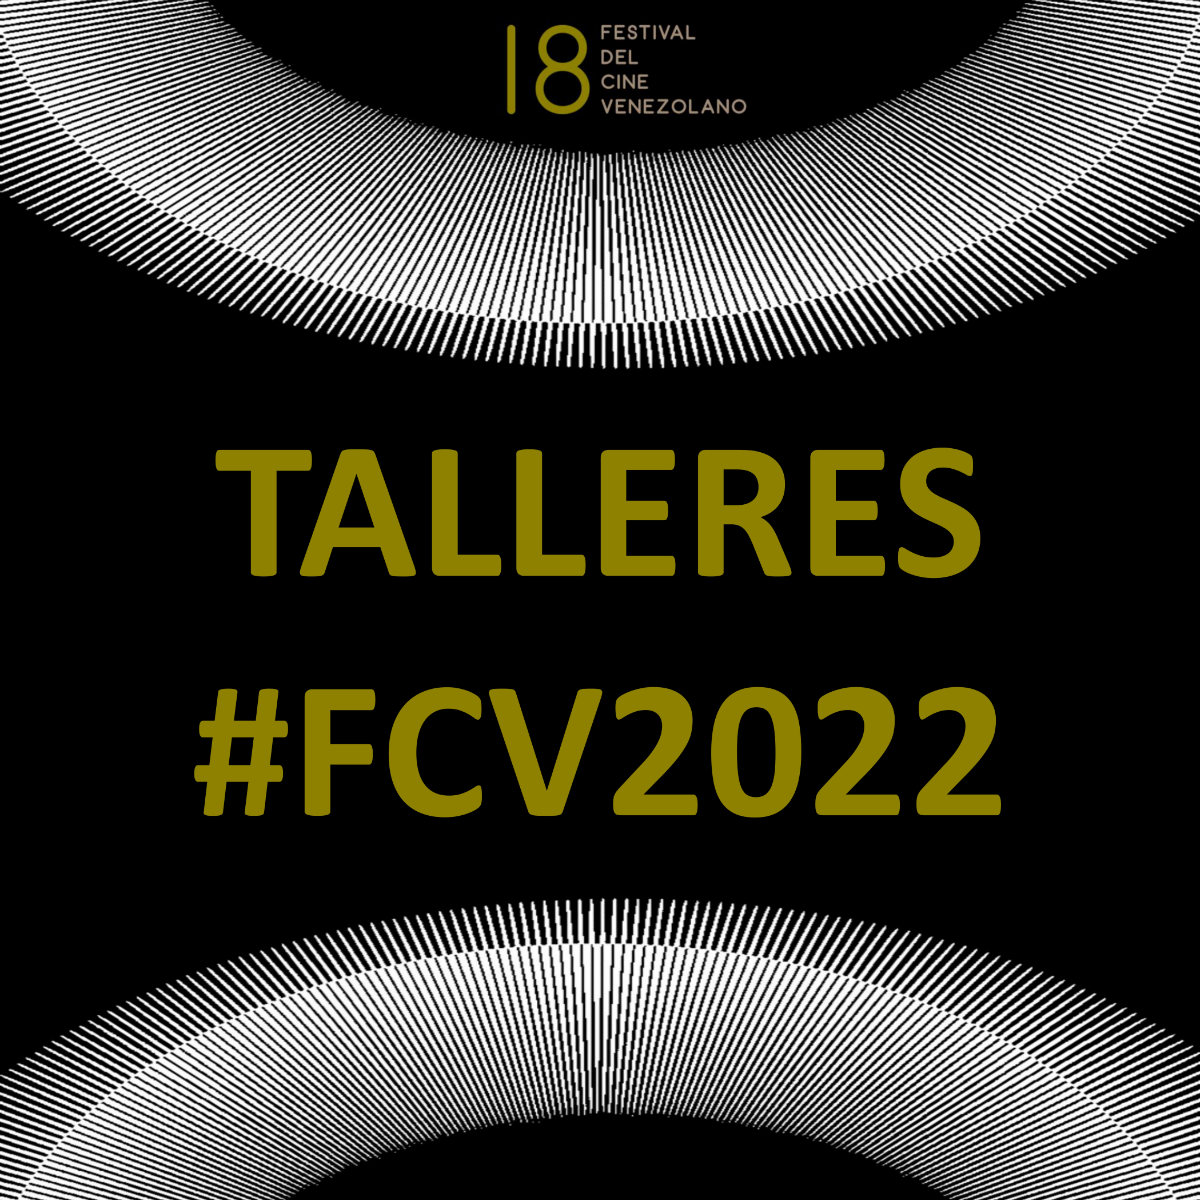 TALLERES #FCV2022